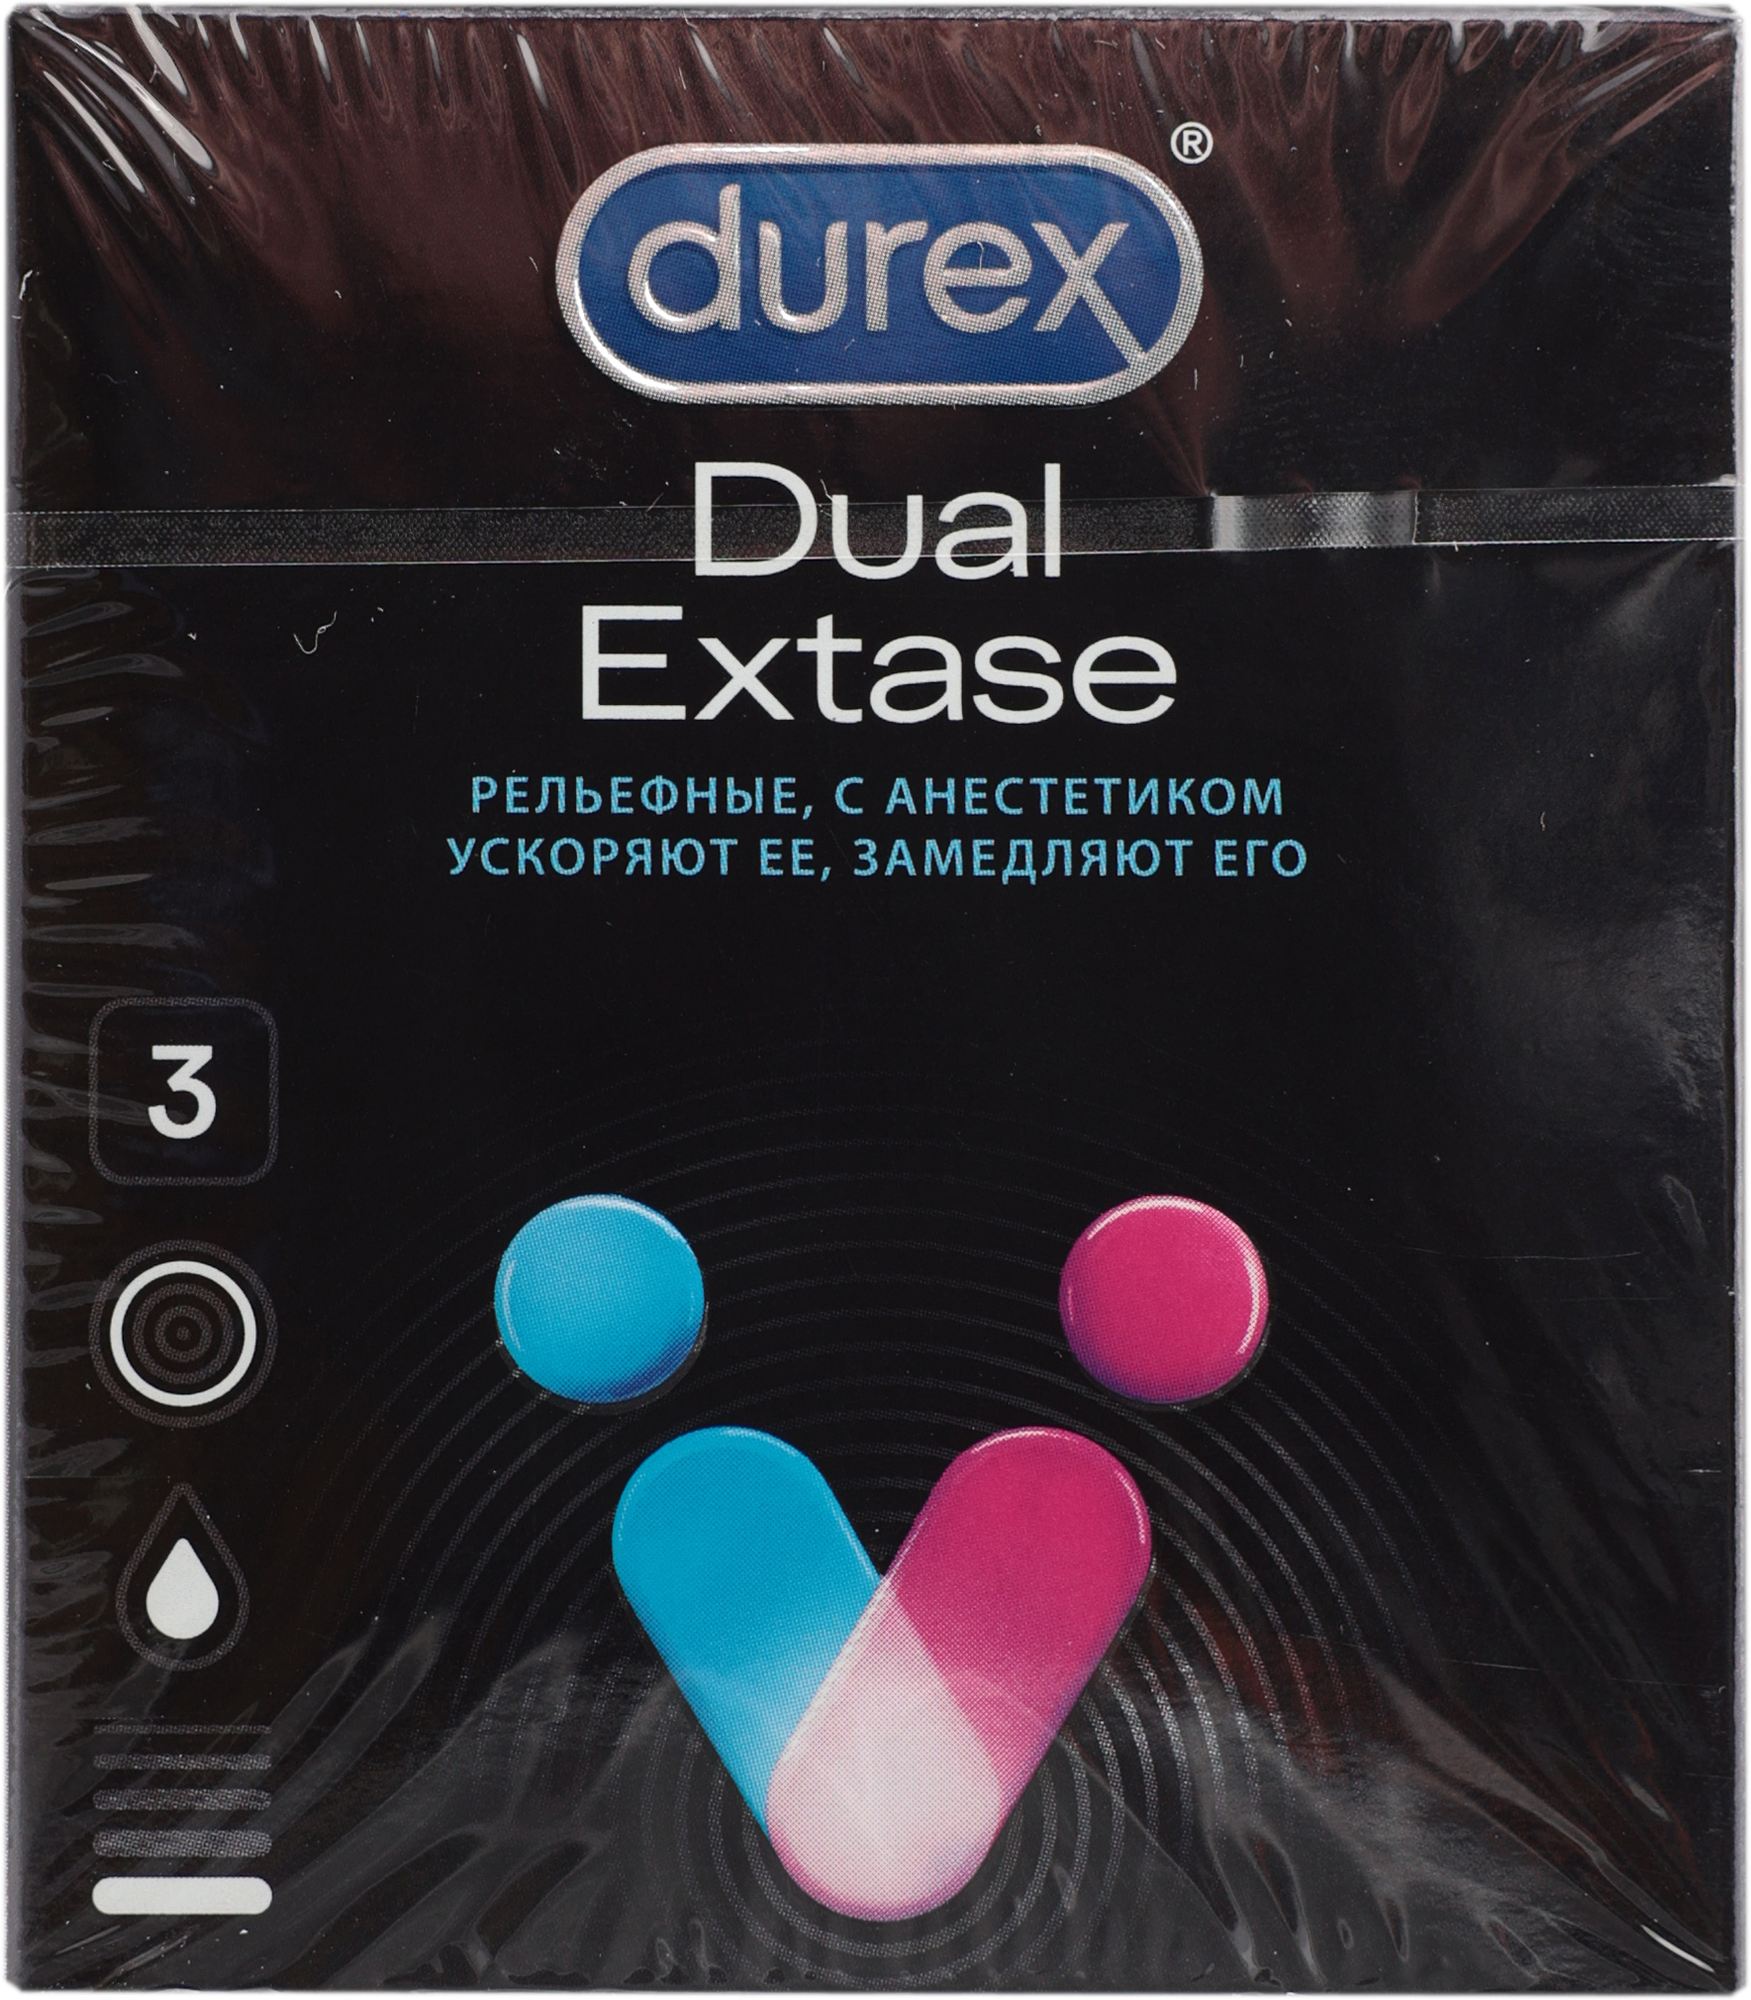 Презервативы Durex Dual Extas рельефные, 3 шт - фото №5